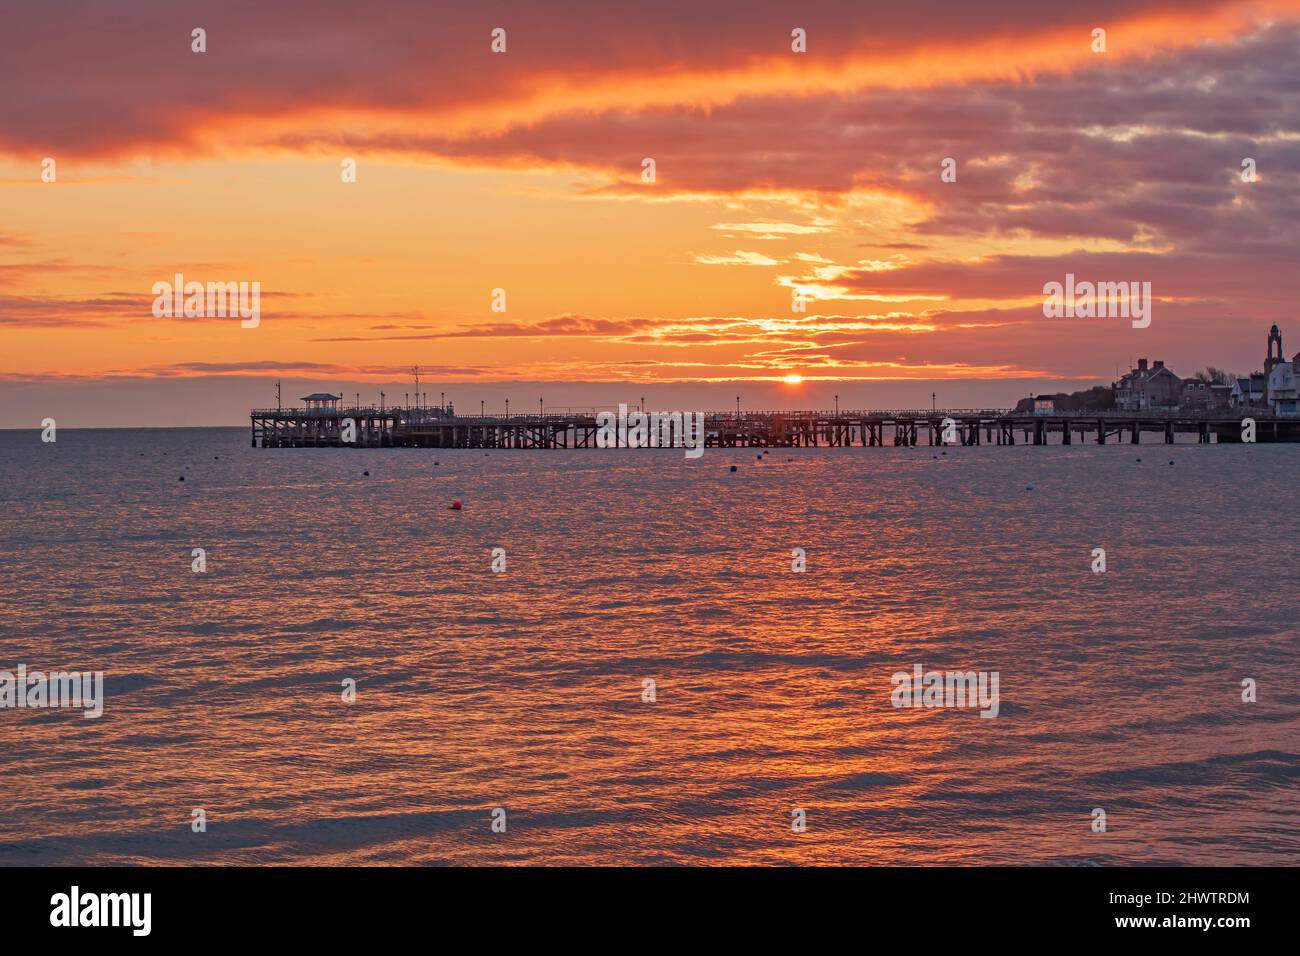 Orange sunrise over Swanage Pier Stock Photo